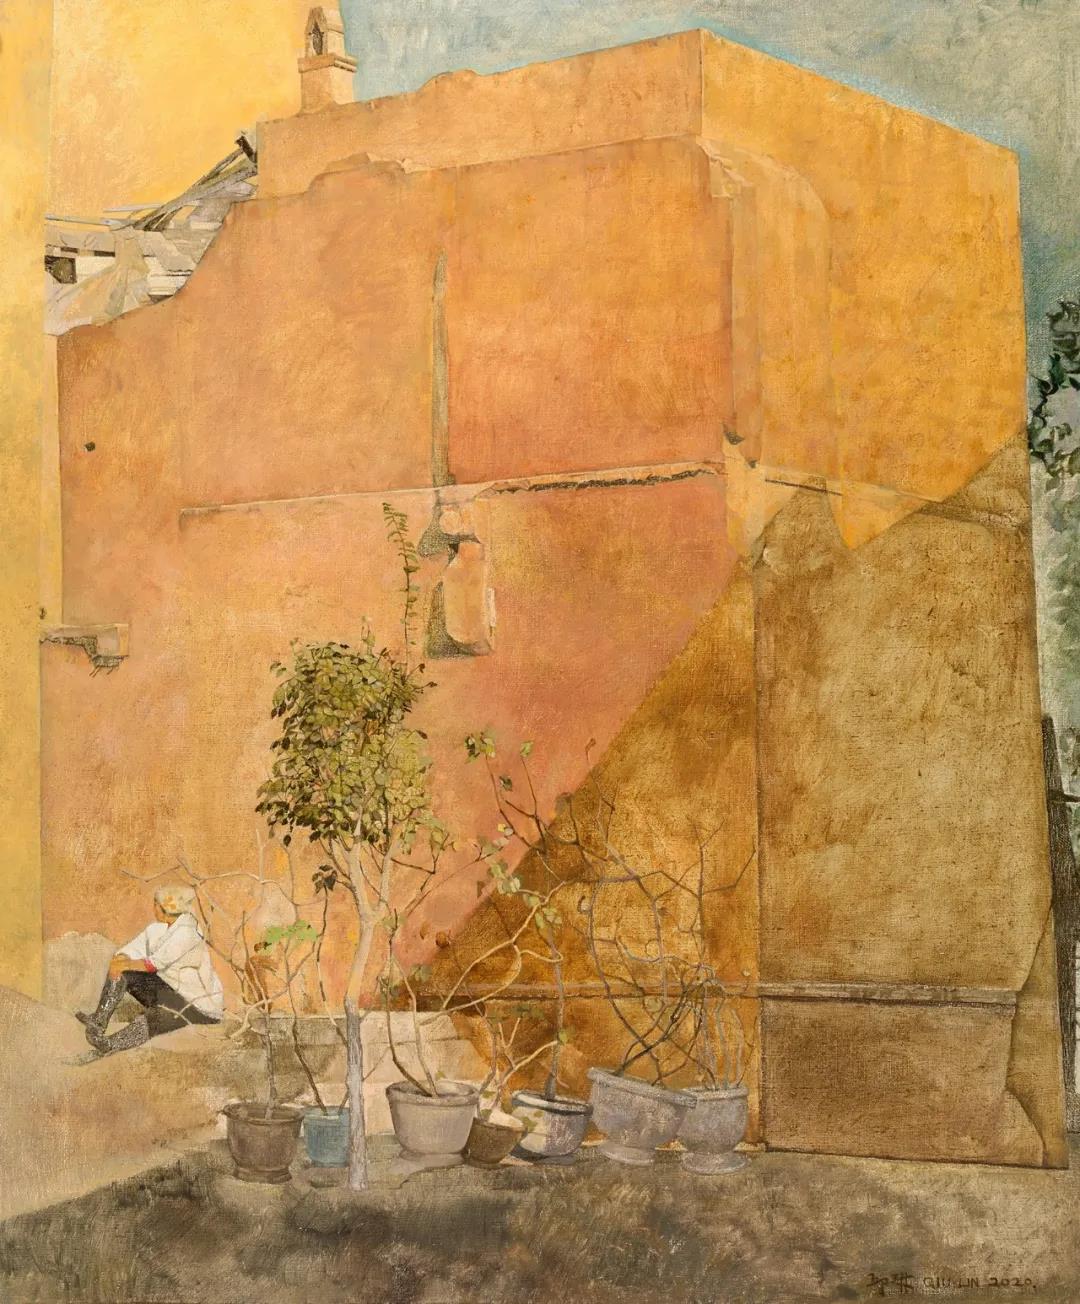 邱琳 暖阳 布面油画 61×51cm 2020 年